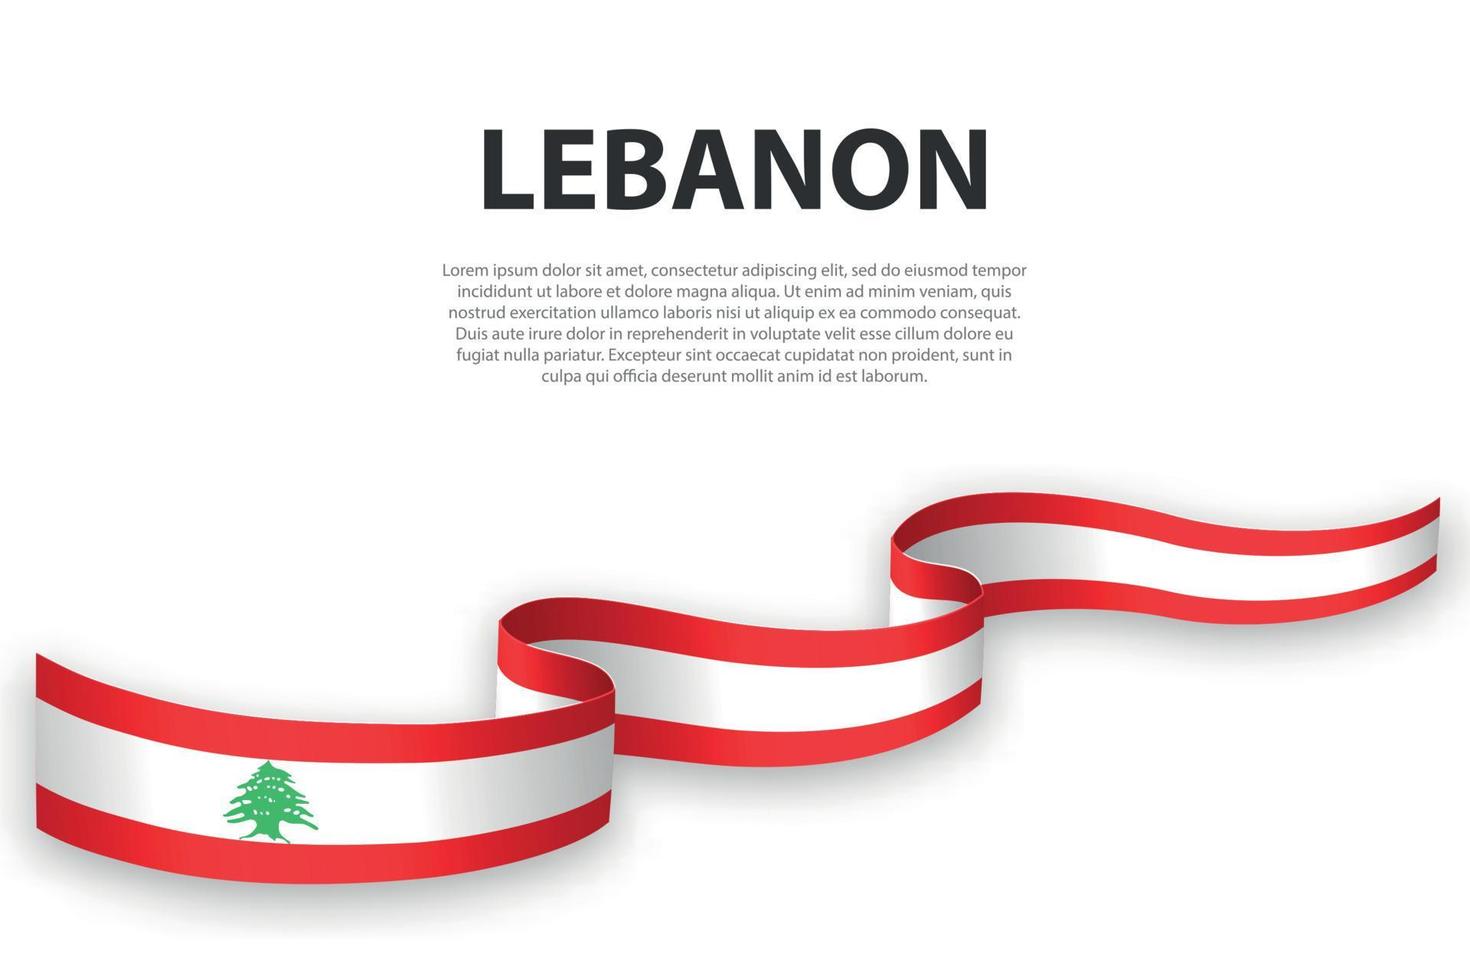 sventolando il nastro o lo striscione con la bandiera del libano vettore